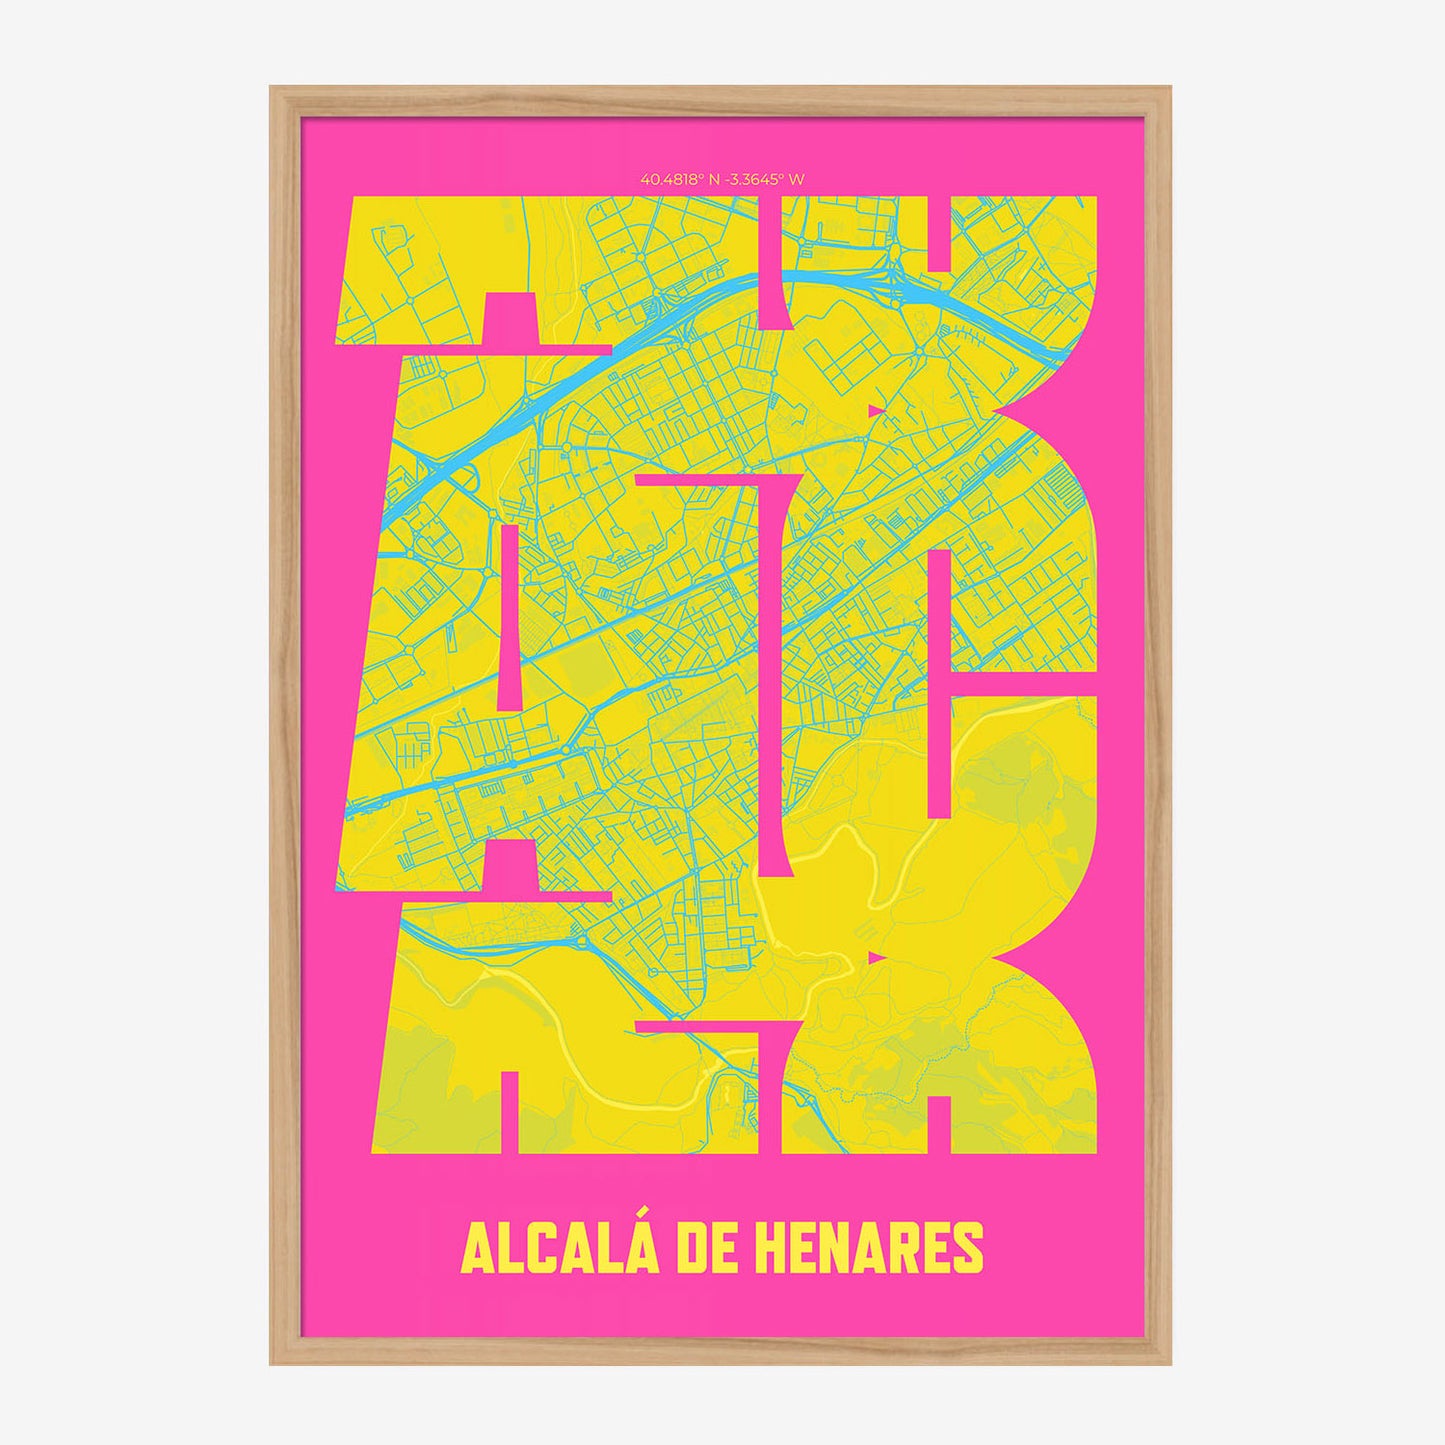 ALC Alcala de Henares Poster